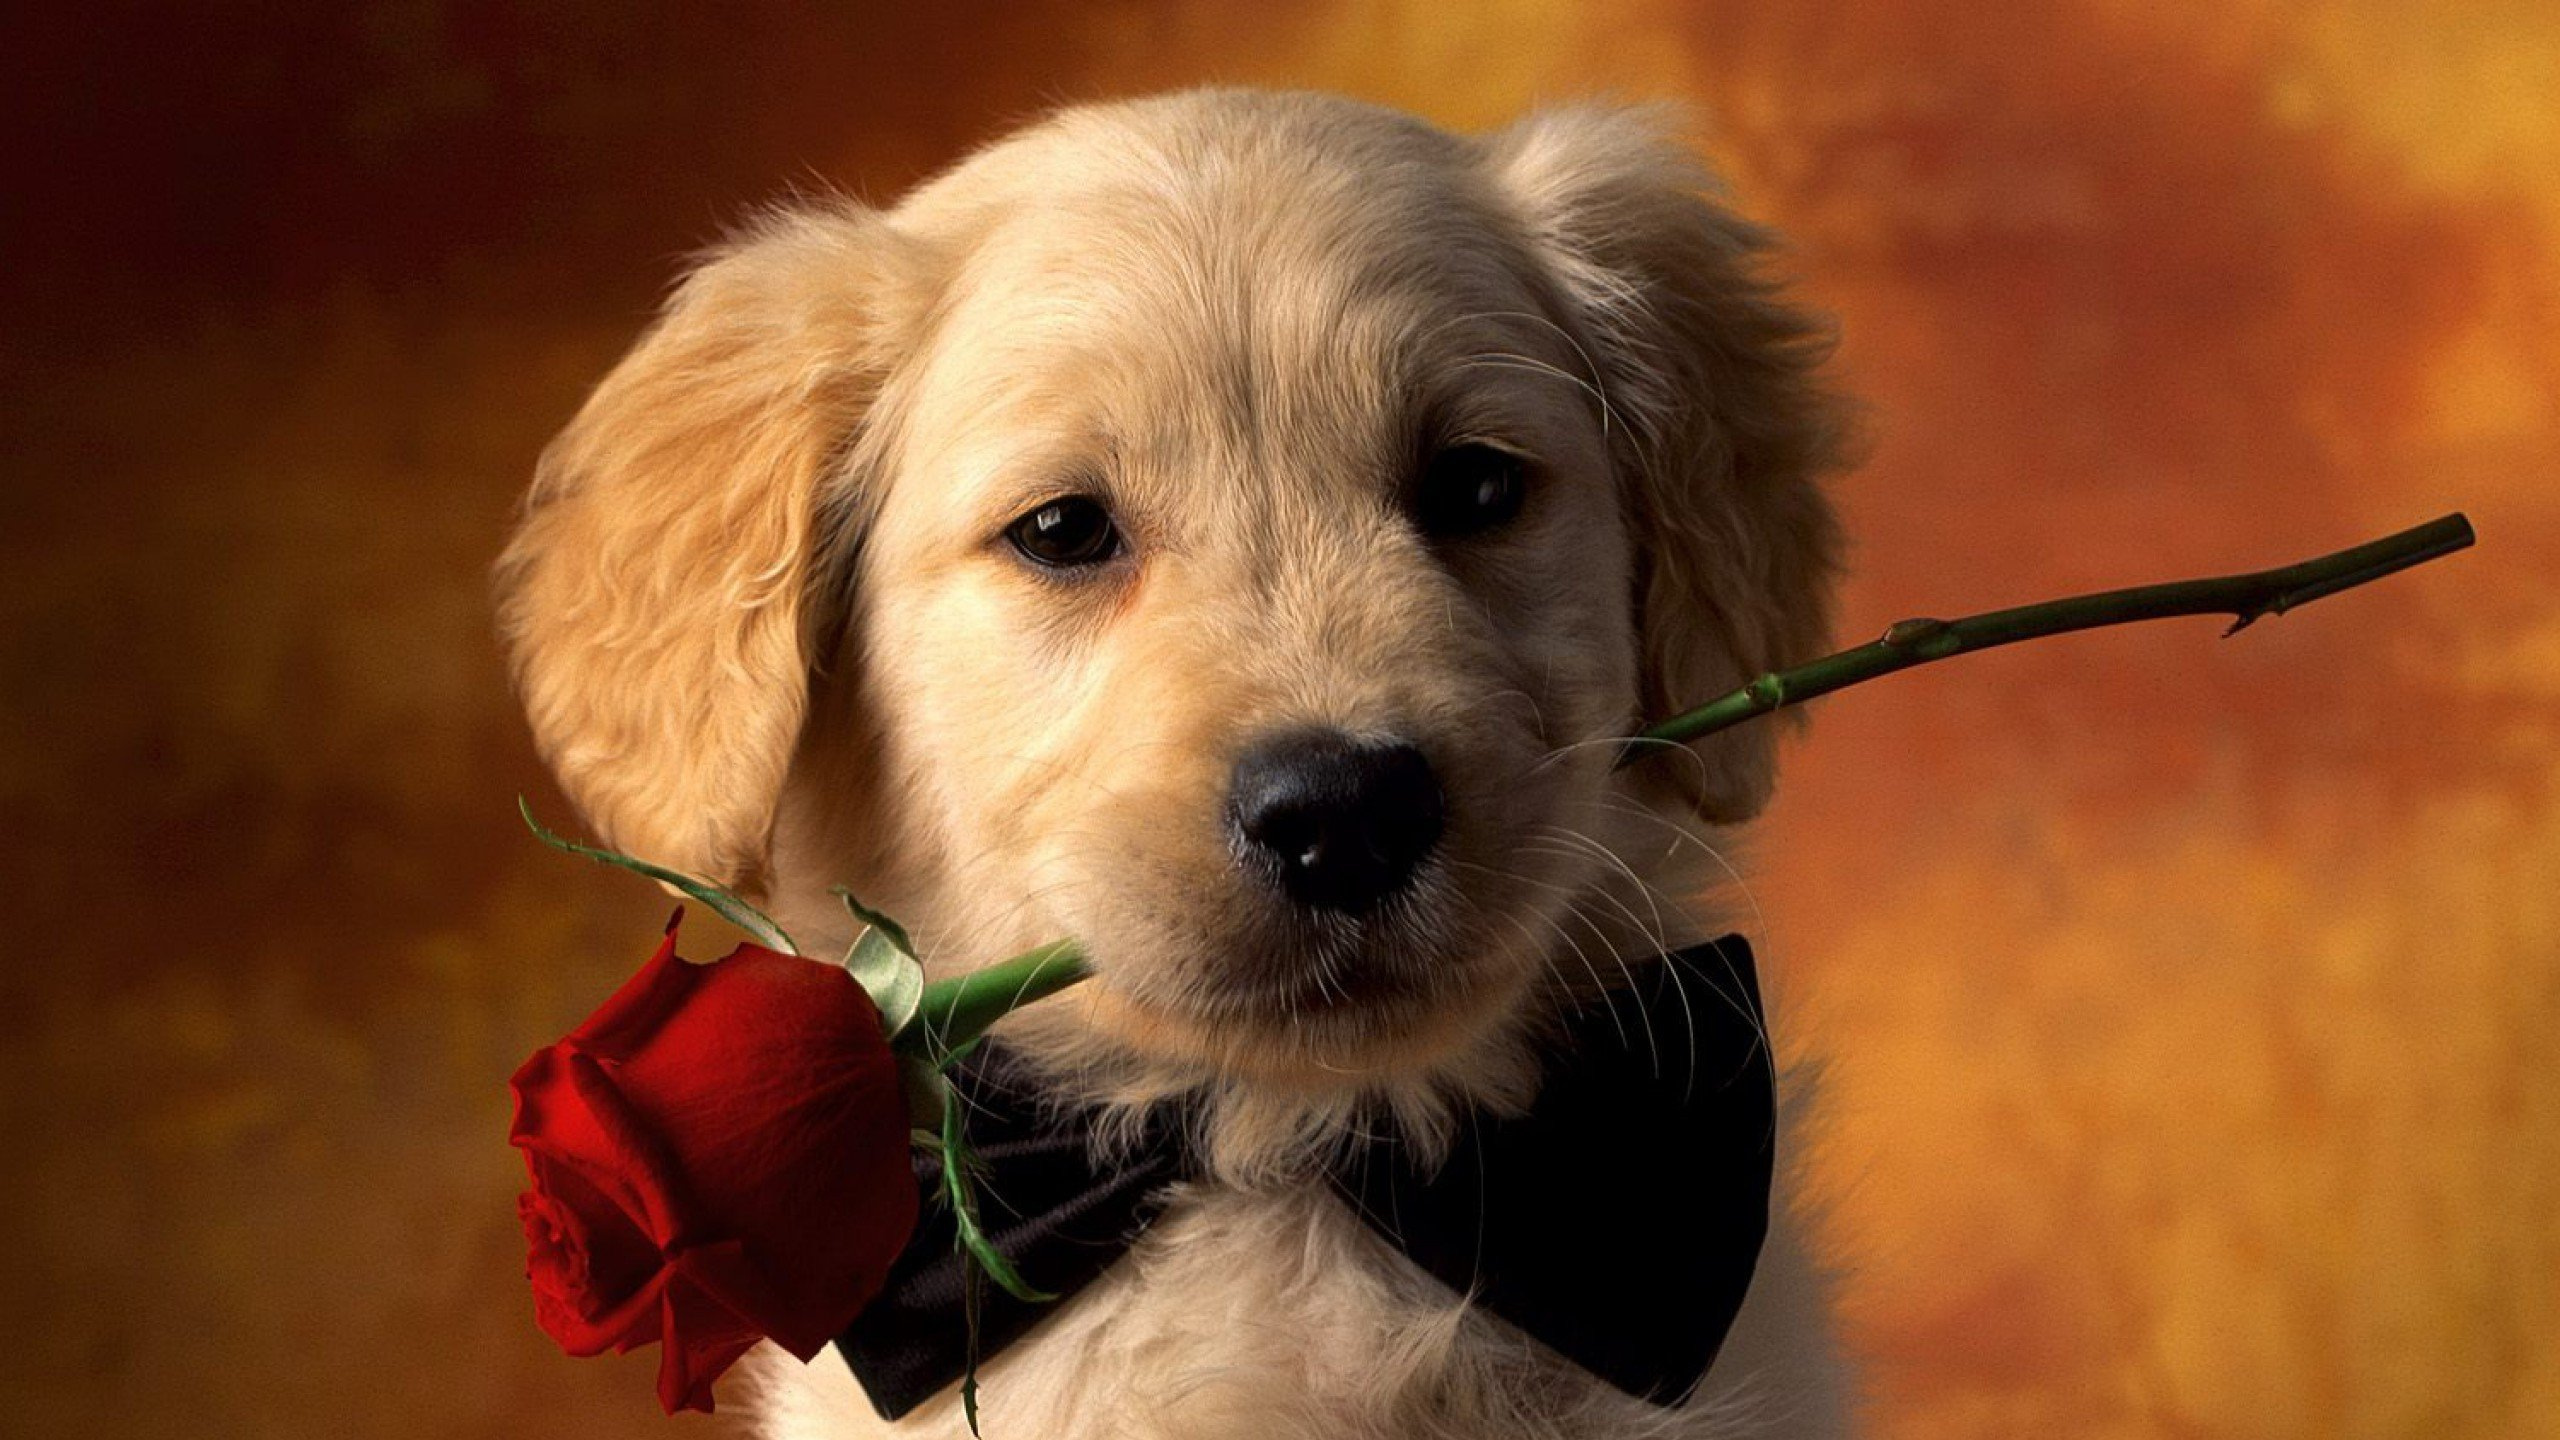 小狗, 黄金猎犬, 可爱, 品种的狗, 伴侣的狗 壁纸 2560x1440 允许